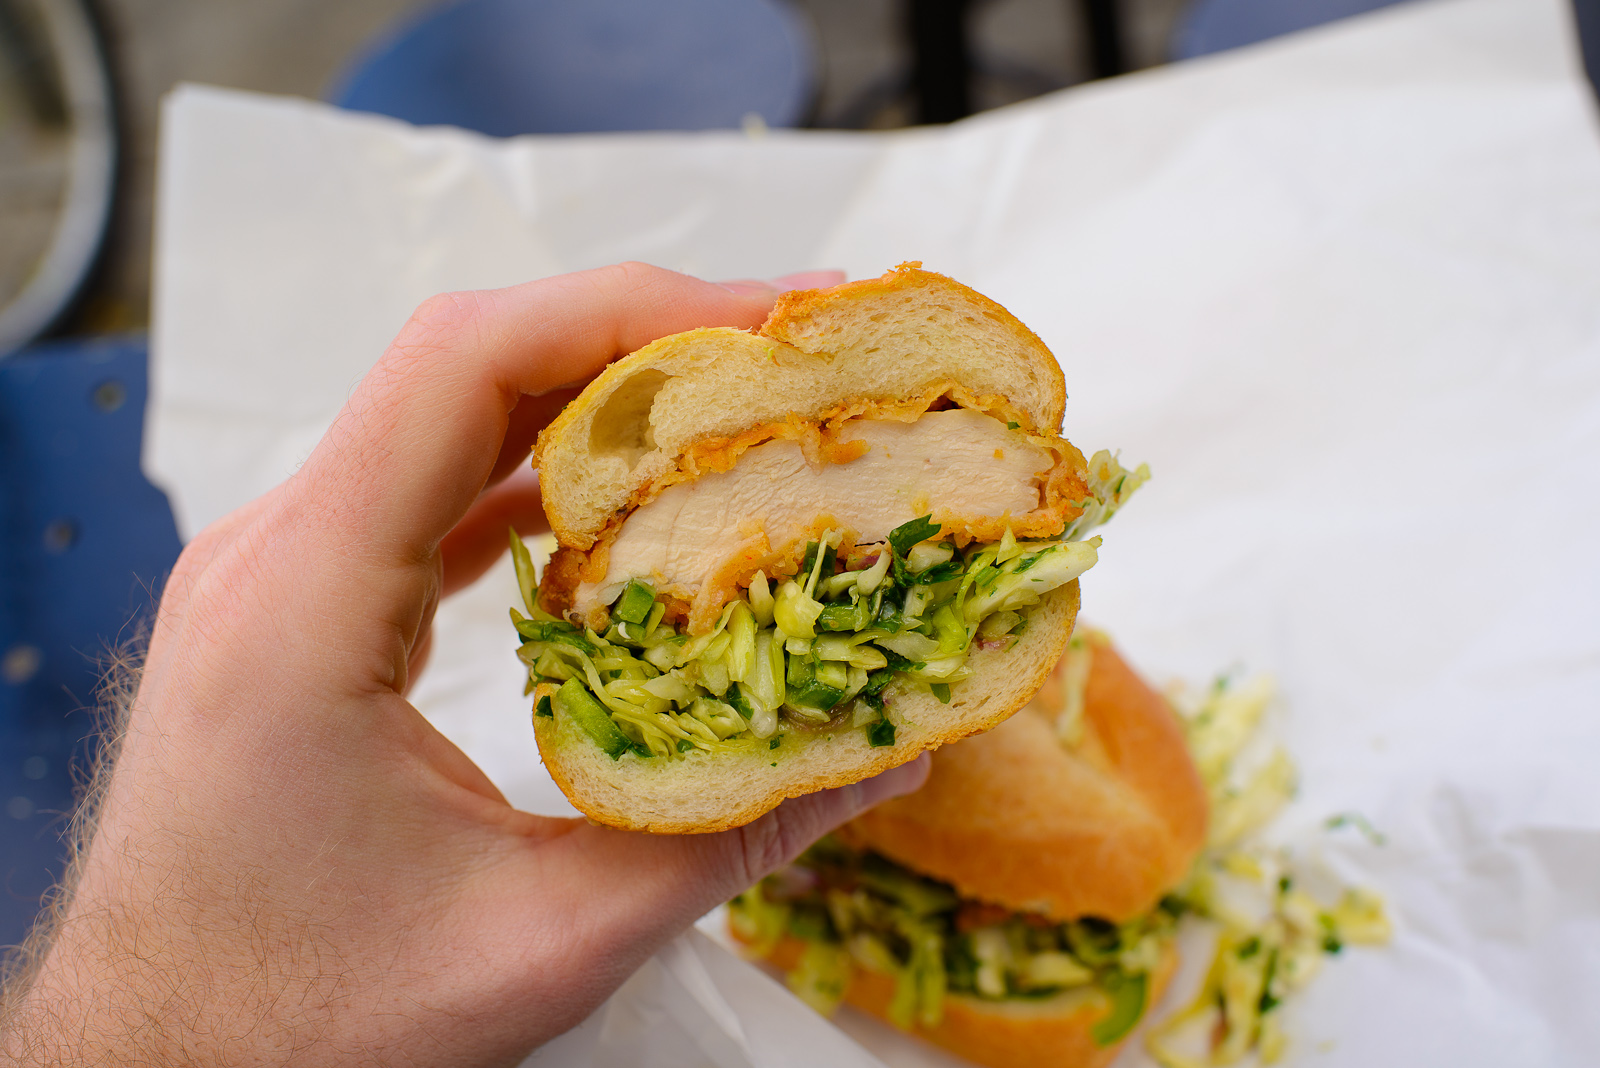 Fried chicken sandwich, up close ($8.74)